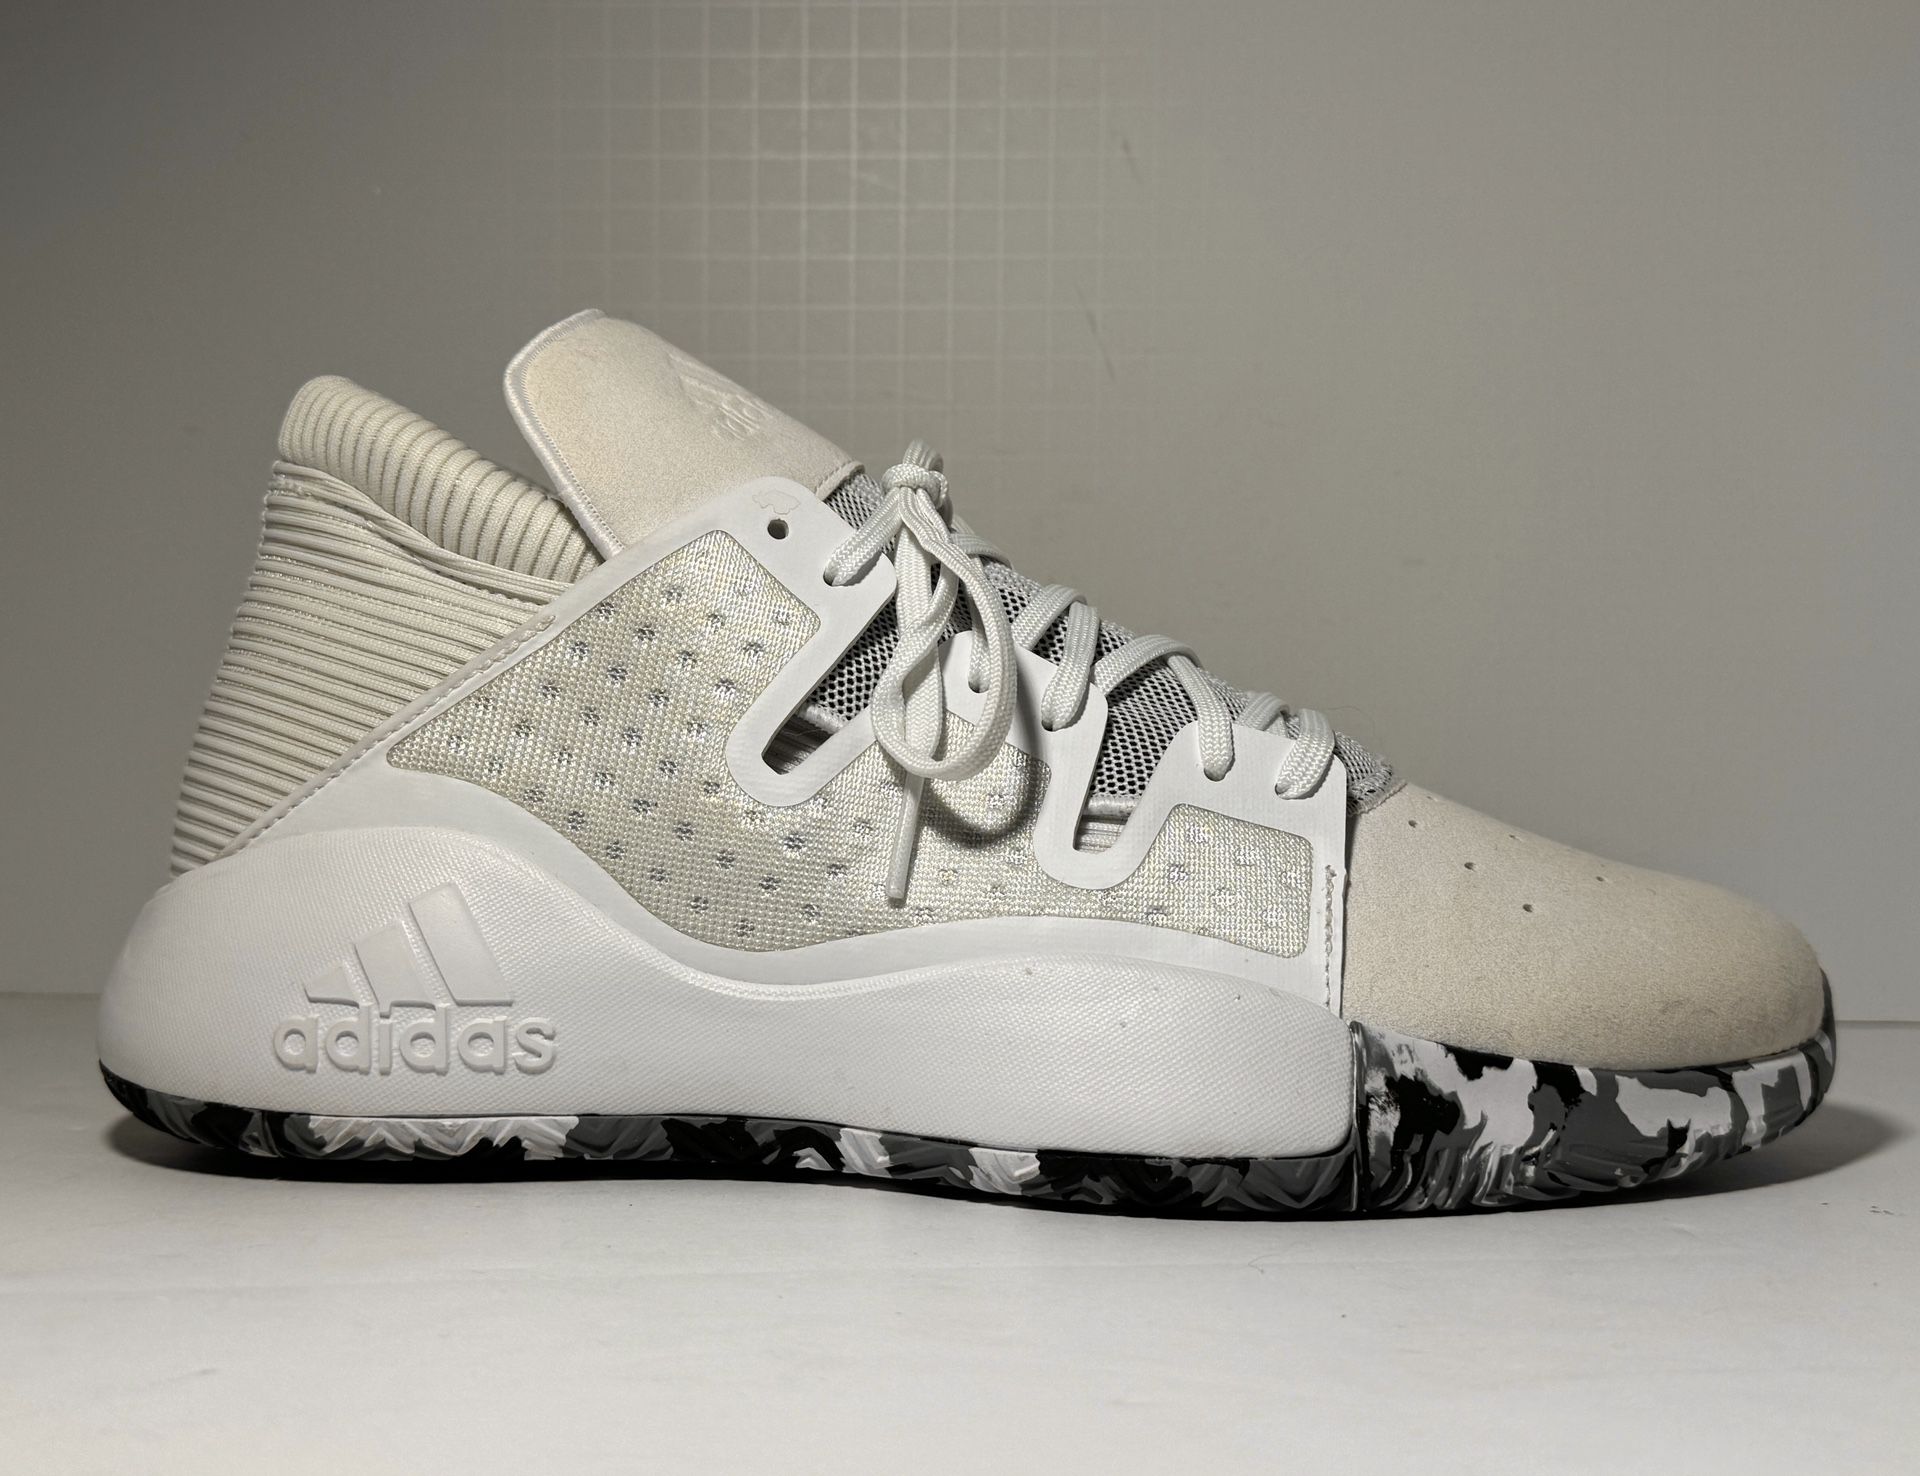 Adidas Pro Vision Trainers White Camo Basketball Shoe Ortholite EF0485 Size 9